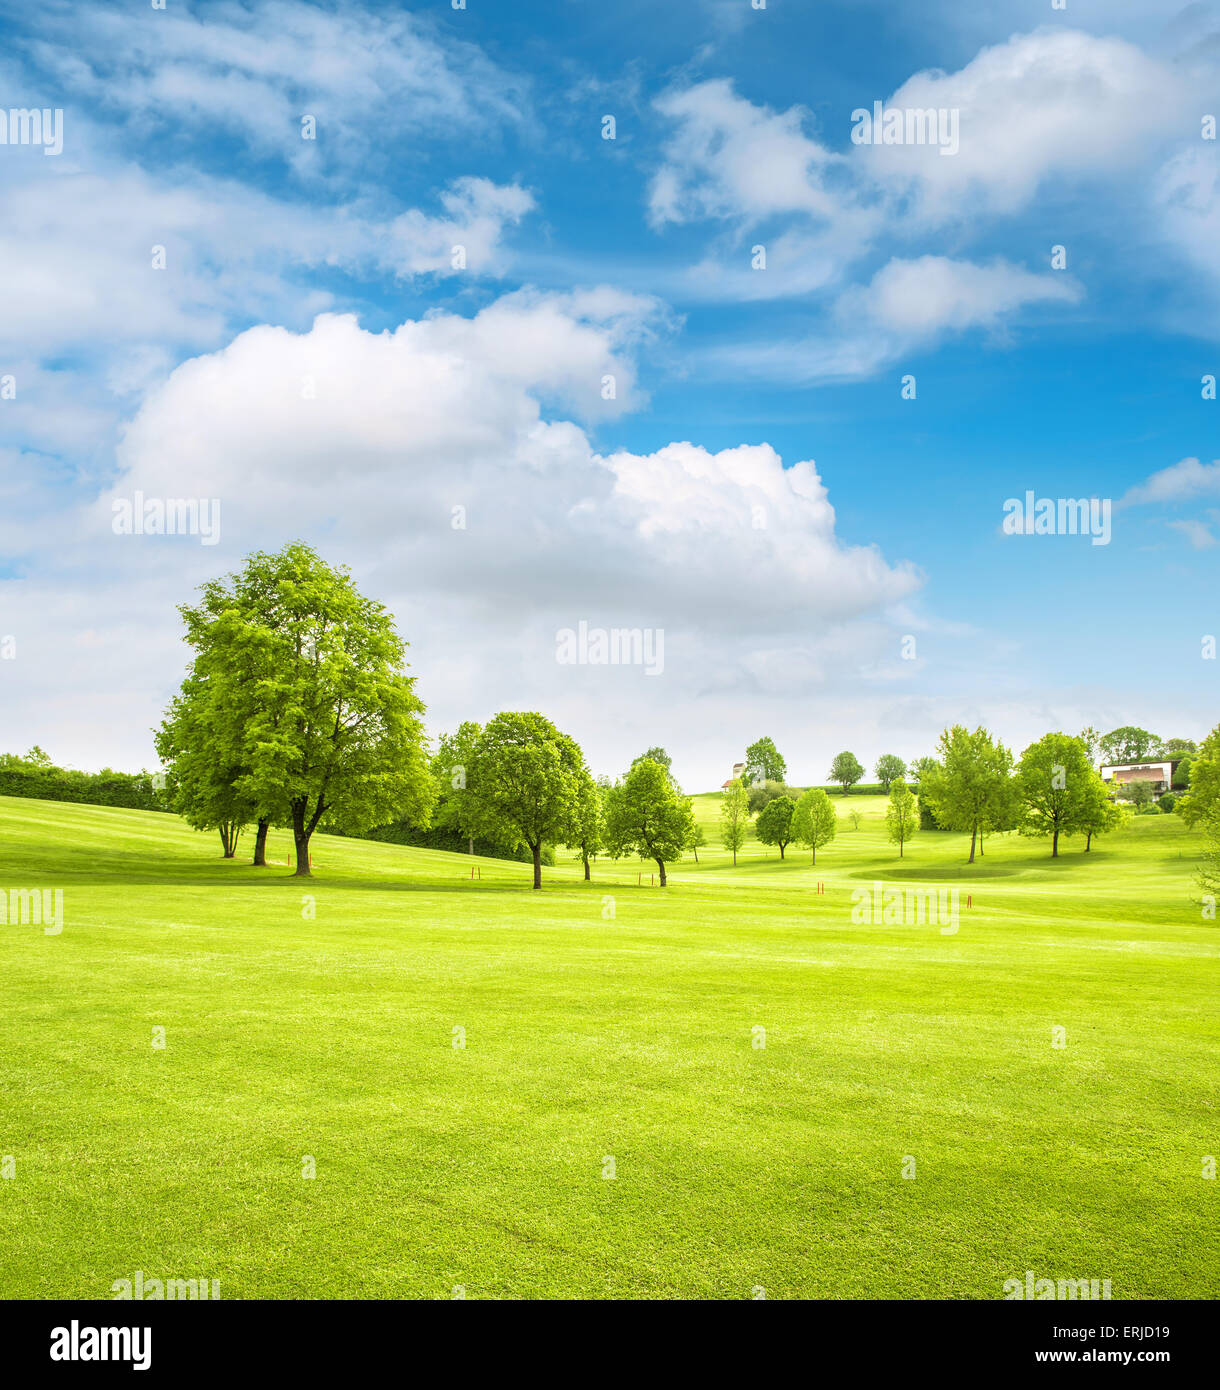 Champ de printemps paysage avec de l'herbe bien verte, arbres et ciel nuageux ciel bleu. Golf course Banque D'Images